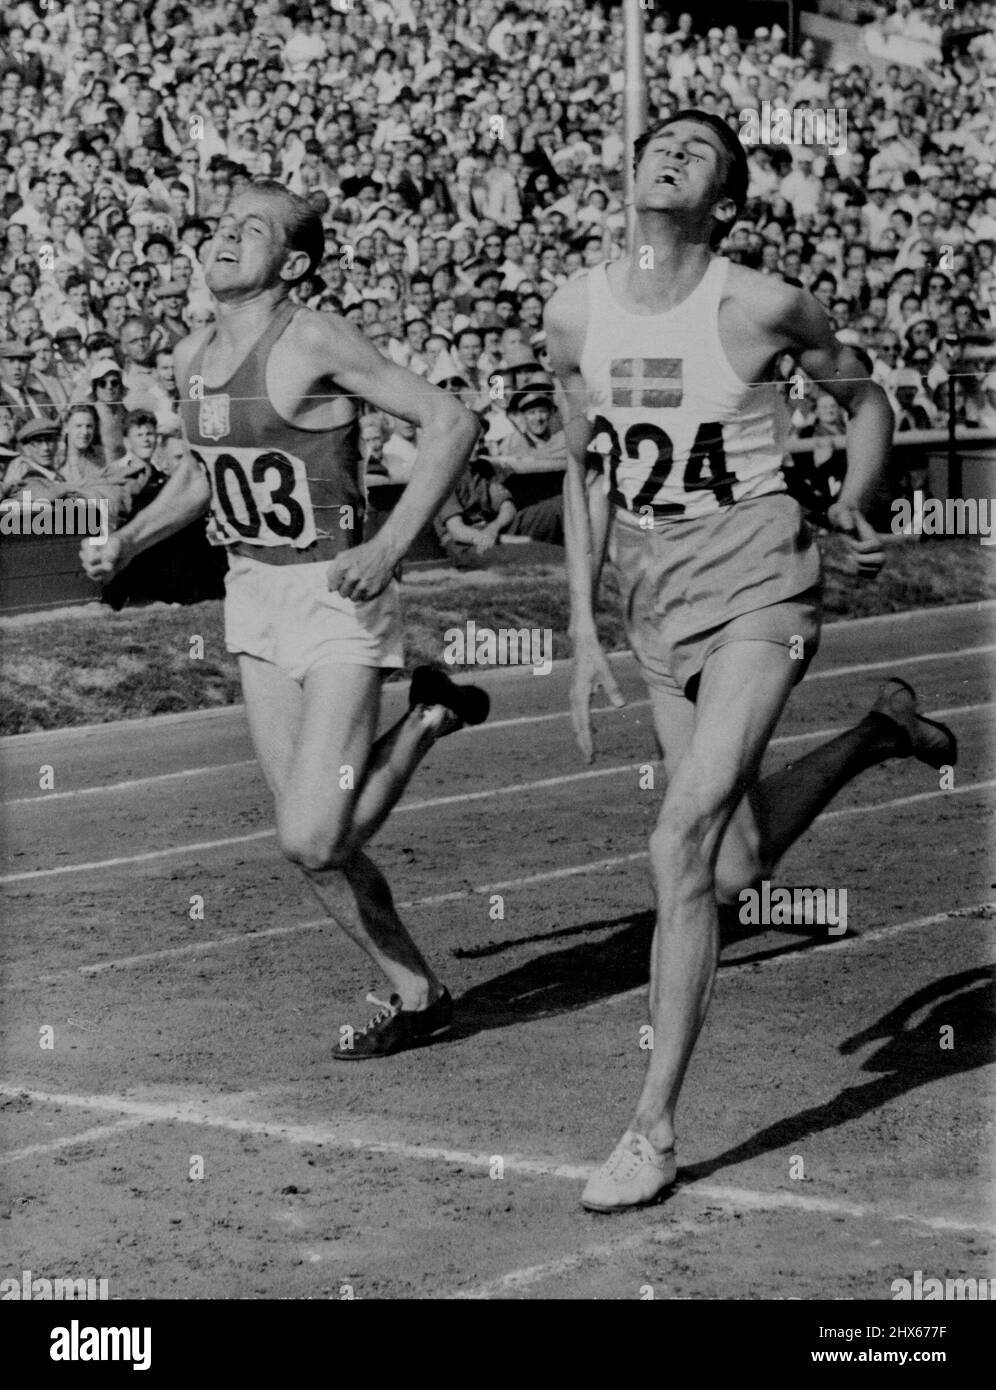 Swede gagne la chaleur 2 de 5000 mètres -- E. Ahlden (224) de Suède, marque une victoire rapprochée sur Emil Zatopek (203) de Tchécoslovaquie dans la chaleur 2 de la course de 5000 mètres des Jeux Olympiques de 1948 au stade Wembley, Londres, aujourd'hui, juillet 31. Temps du gagnant : 14 min. 34,2 secondes. Ces deux modèles sont admissibles à la V.I. Makela (Finlande) et M. Stokken (Norvège), dont aucun des deux n'est photographié, pour contester la finale de l'événement le lundi 2 août. 17 août 1948. (Photo par photo de l'Association olympique de photo). Banque D'Images